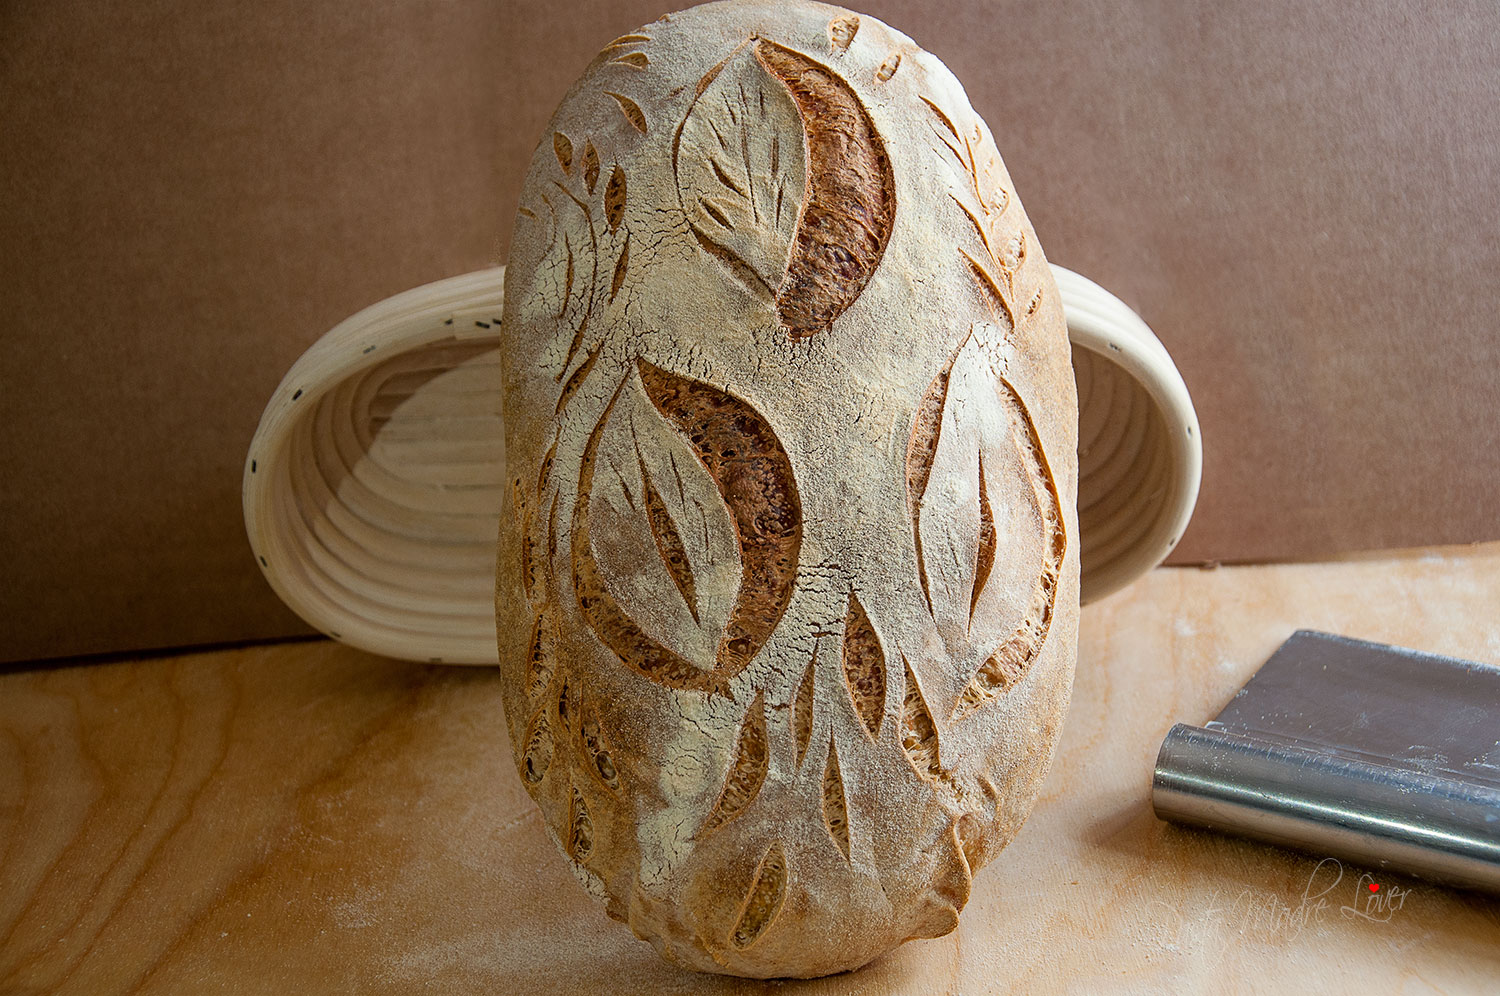 Thumbnail for Filoncino di pane con sfarinato di semola di Altamura DOP